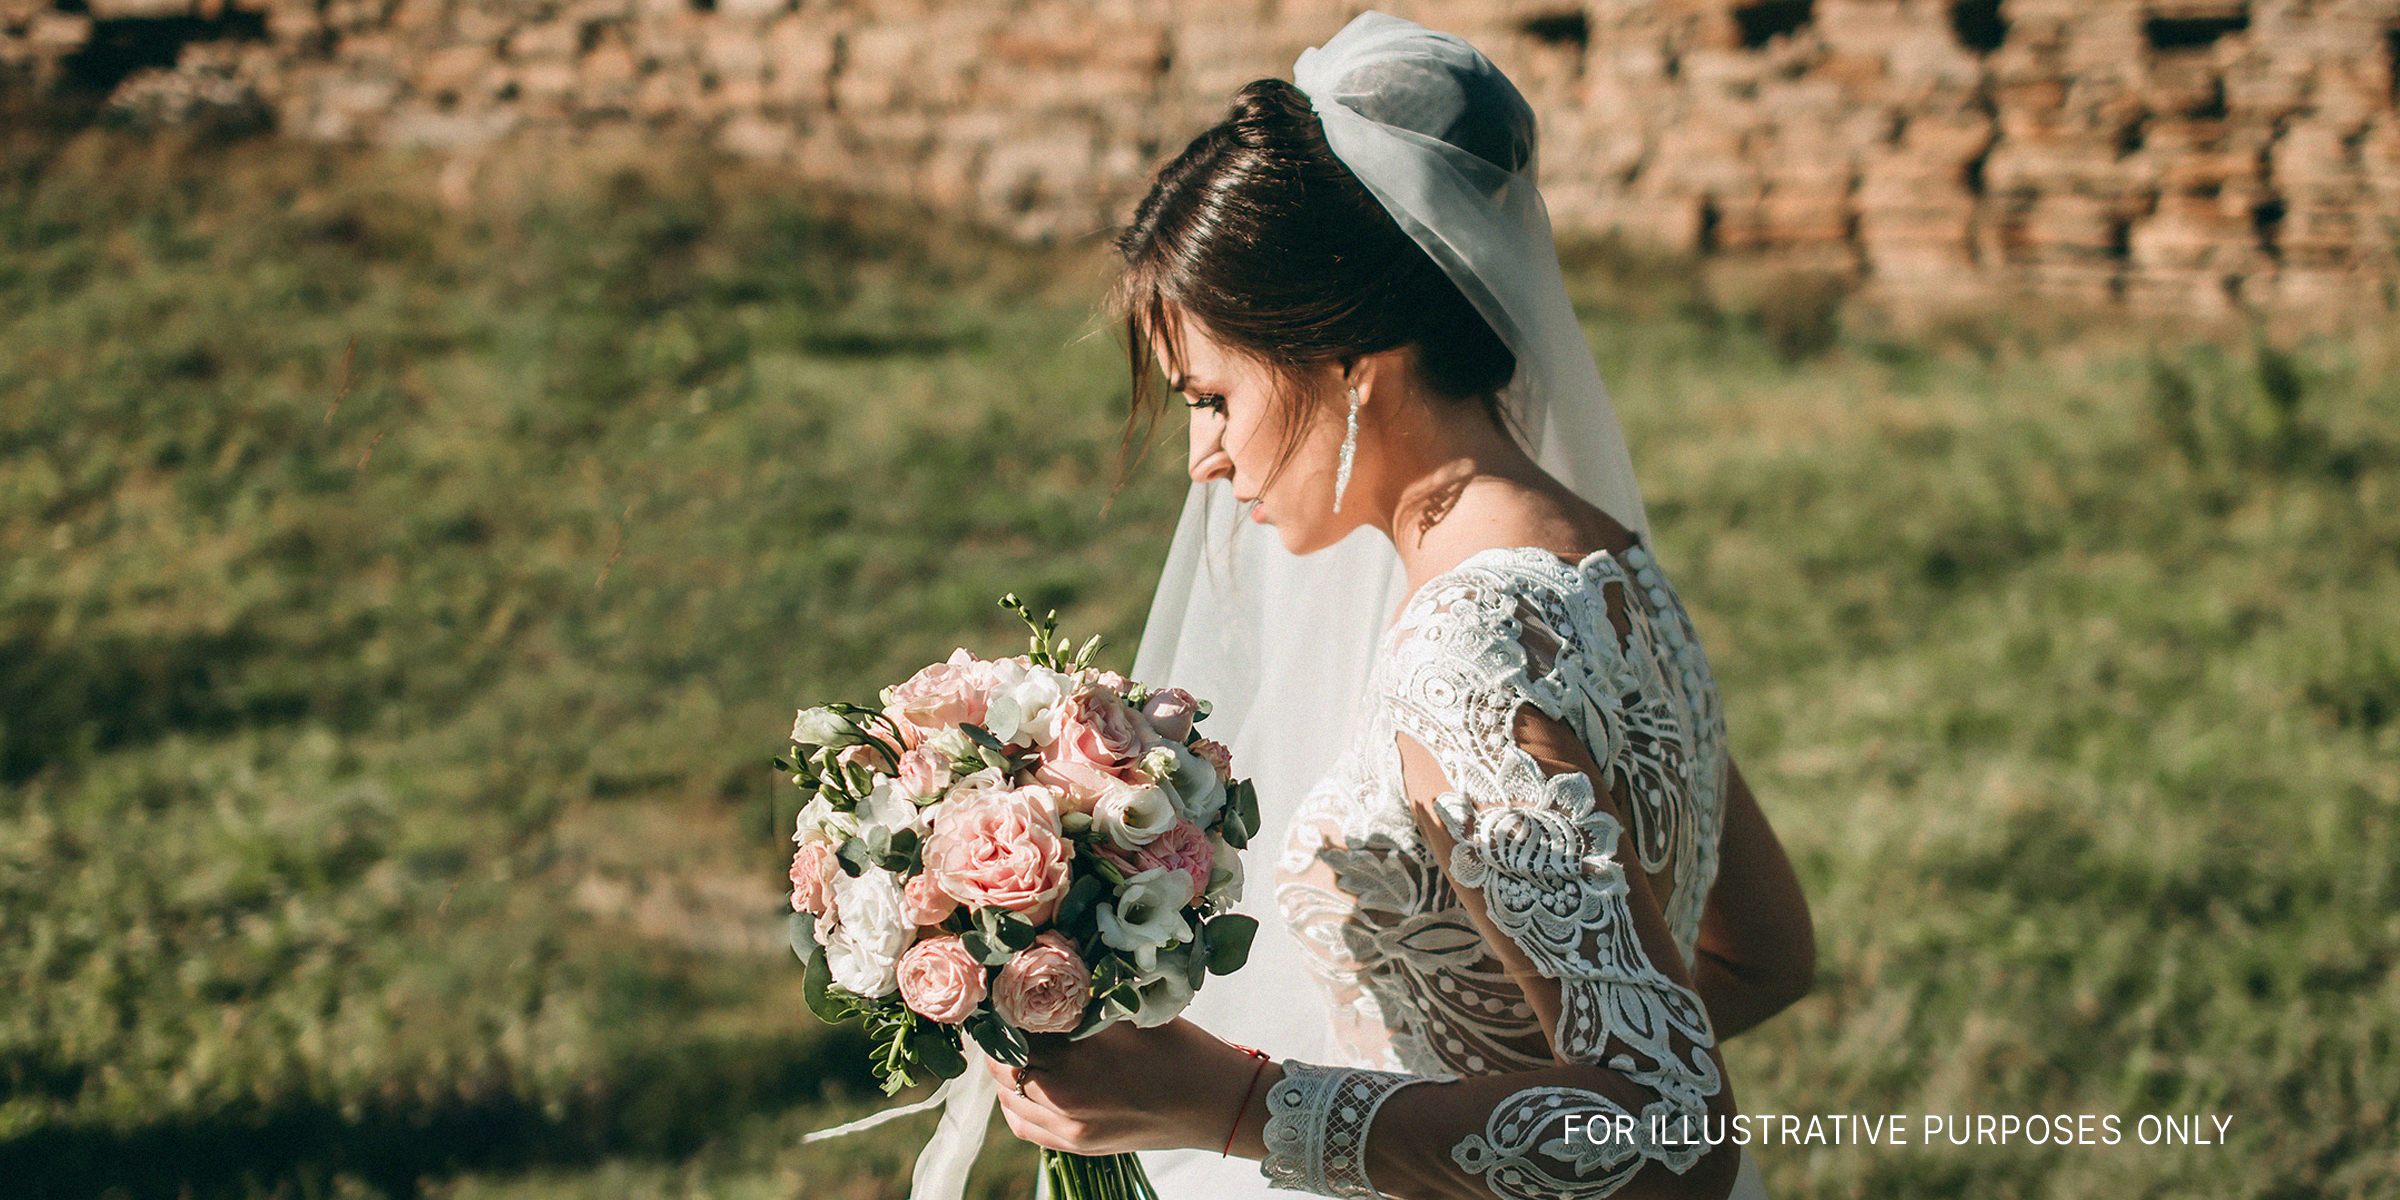 Eine Braut hält einen Blumenstrauß | Quelle: Shutterstock